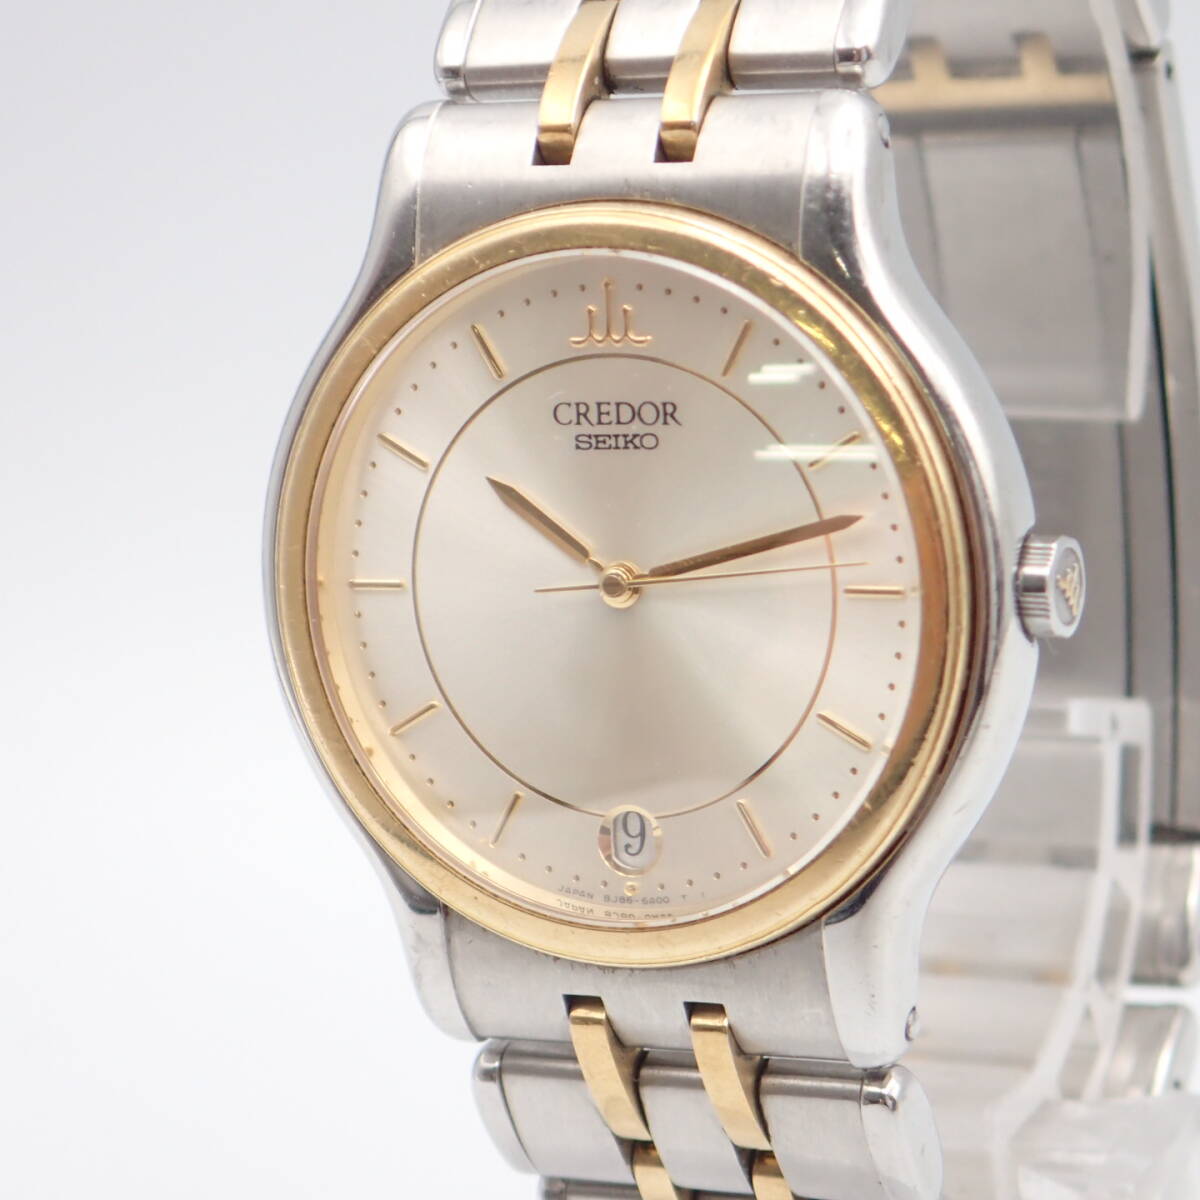 e05034/SEIKO Seiko / Credor / кварц / мужские наручные часы /18KT оправа / комбинированный / циферблат серебряный /8J86-6A00